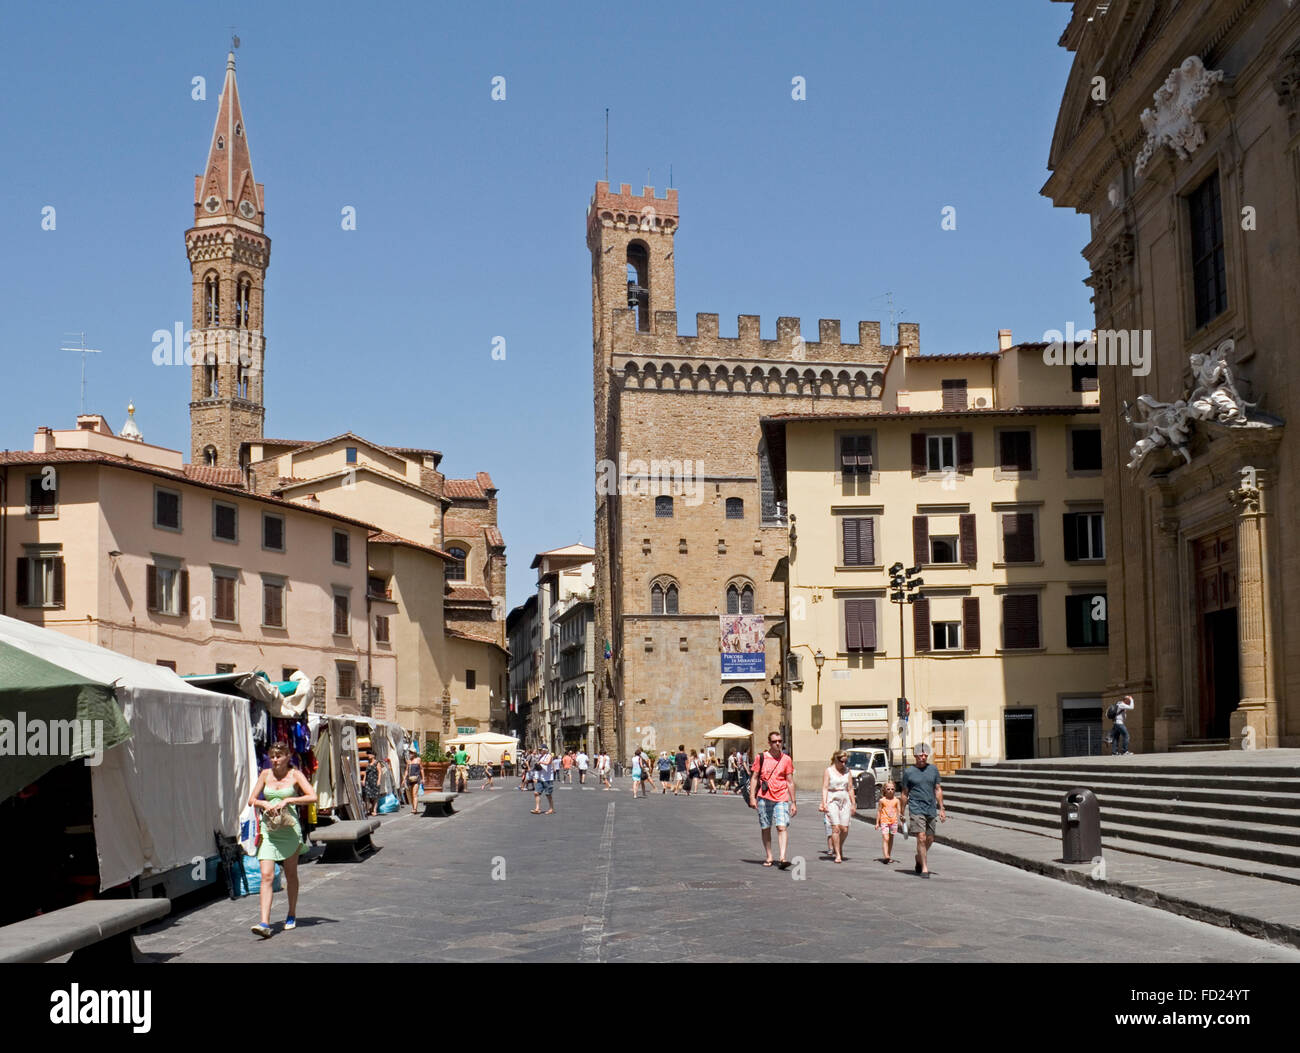 Piazza San Firenze quadratisch mit der Kirche Badia Fiorentina und Palazzo Del Bargello, Florenz, Italien Stockfoto